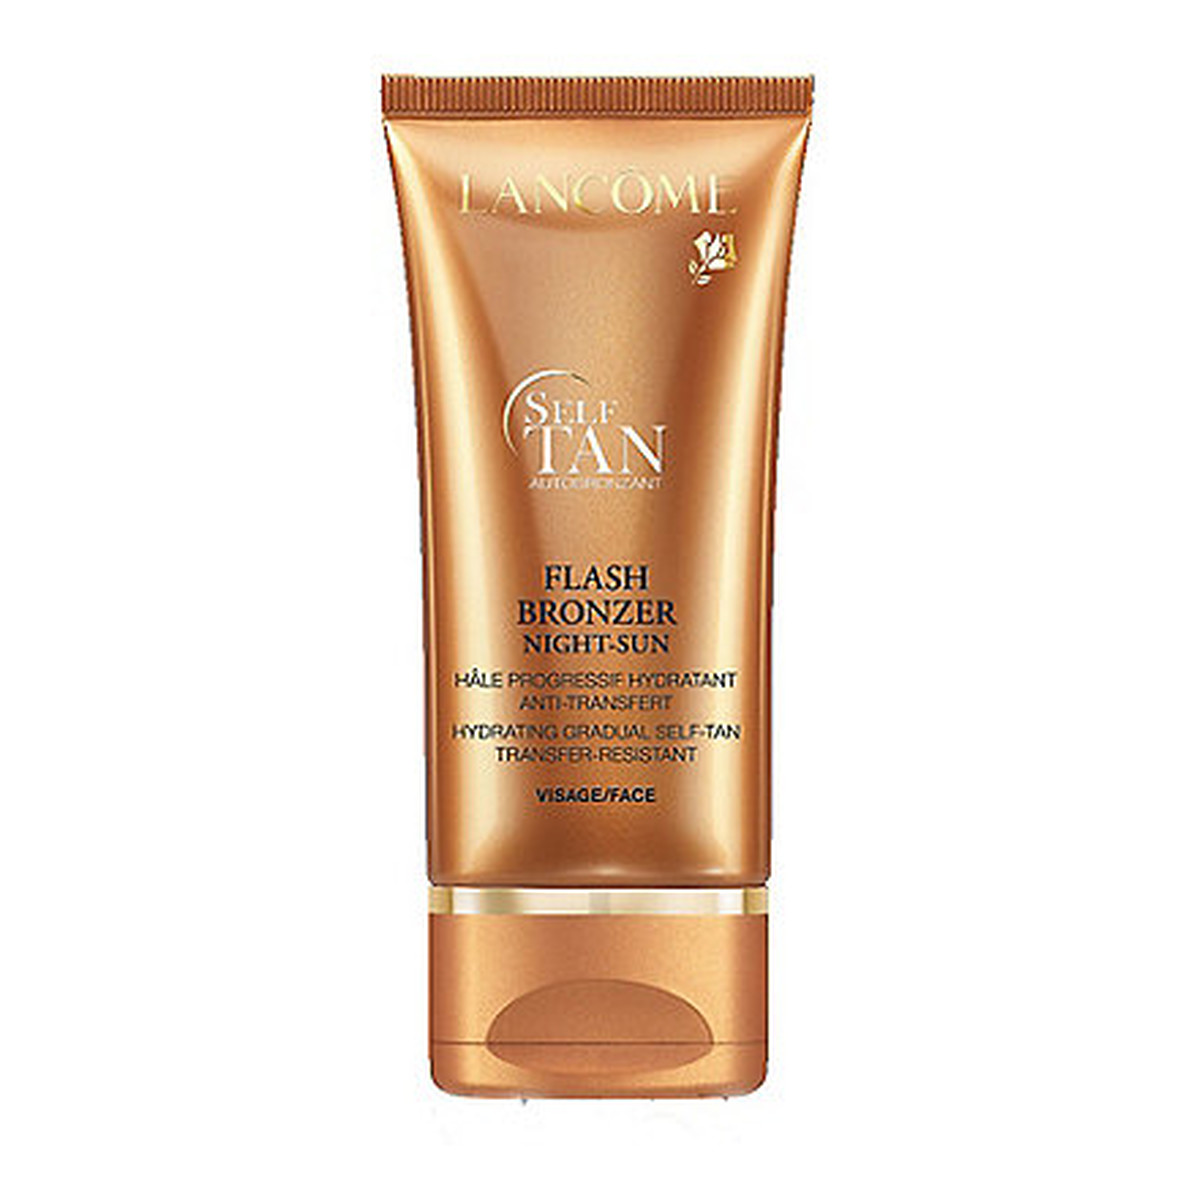 Lancome Self Tan Flash Bronzer Night-Sun Samoopalacz w kremie do twarzy 50ml